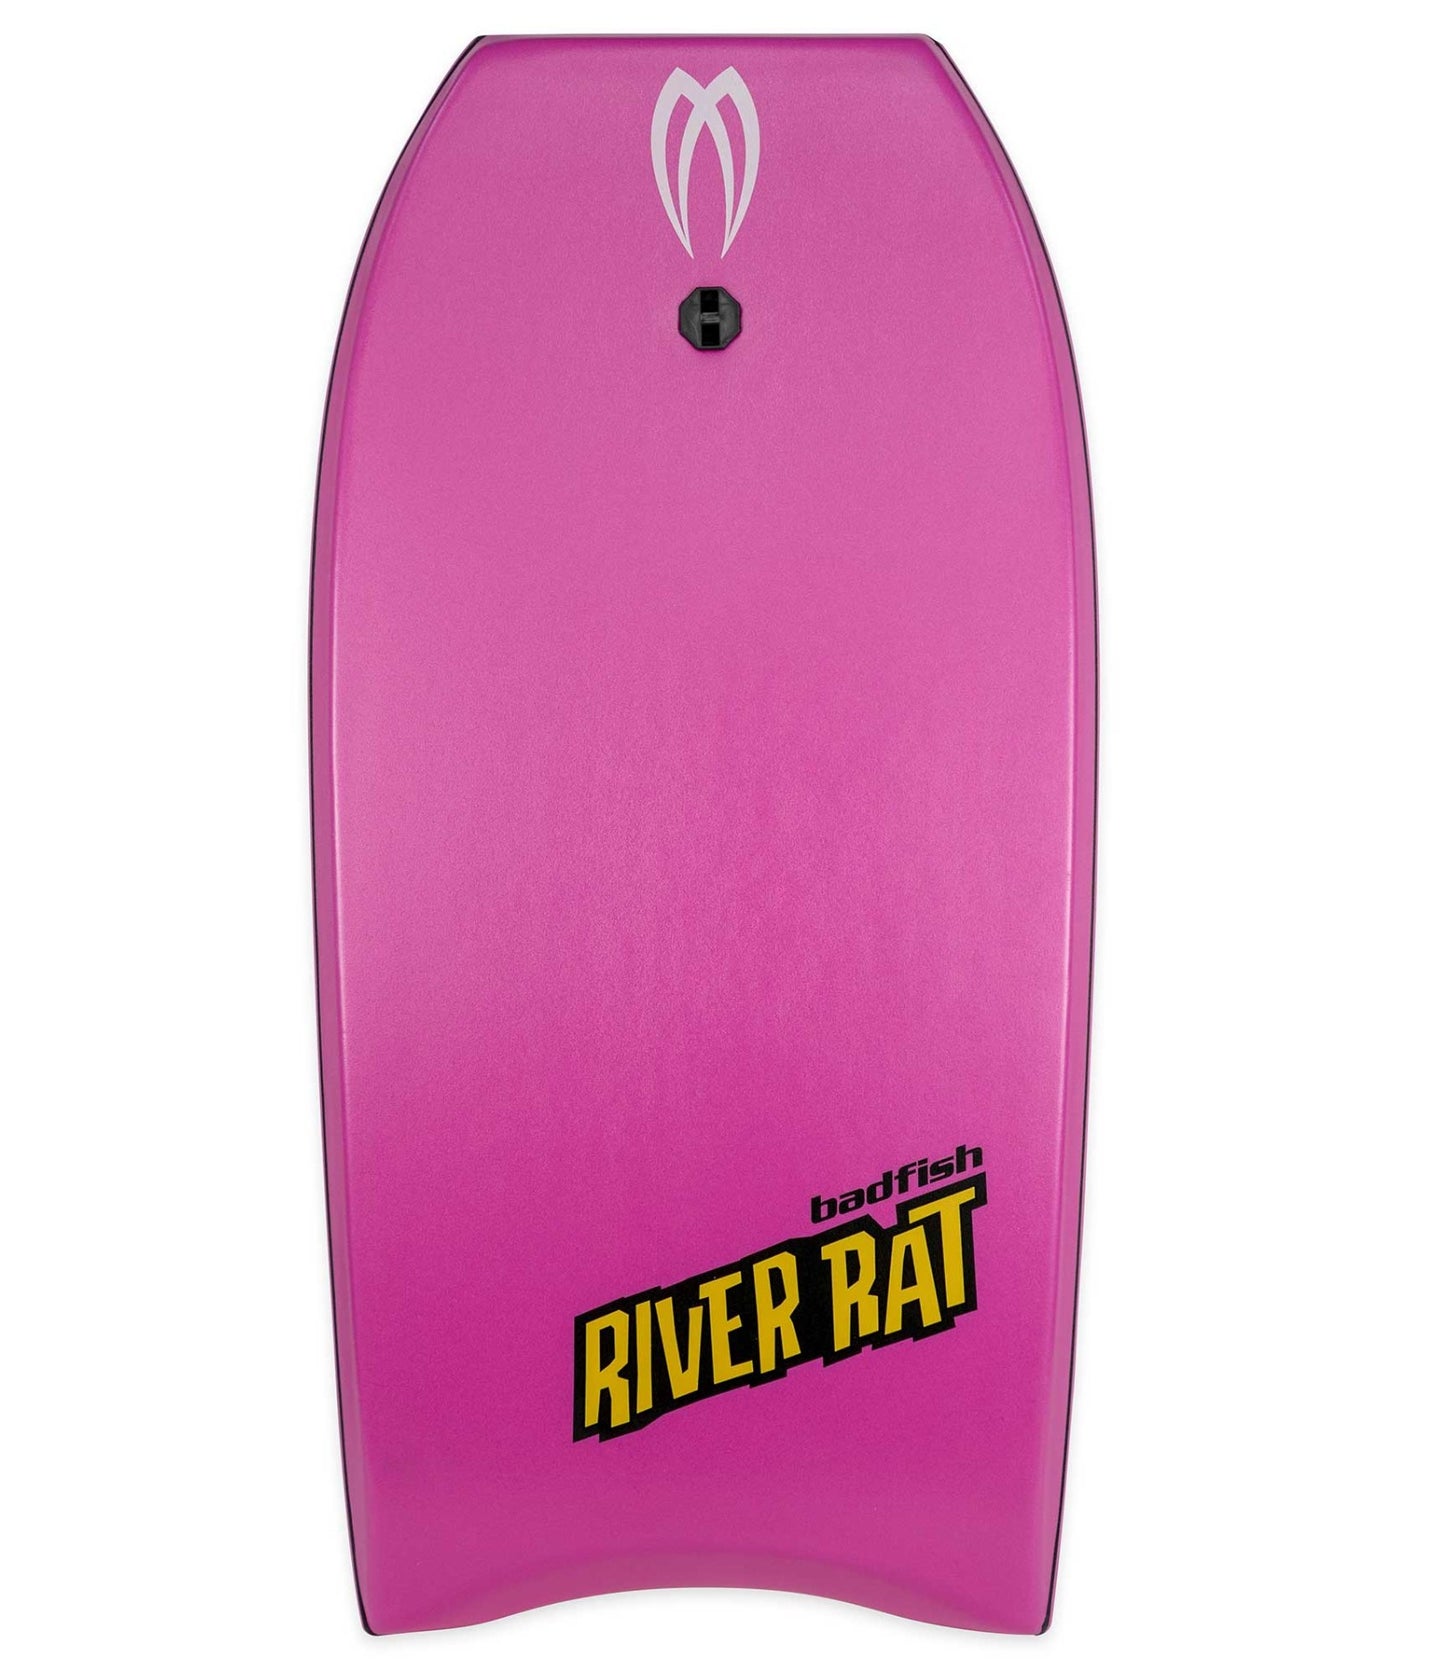 Badfish body surf board